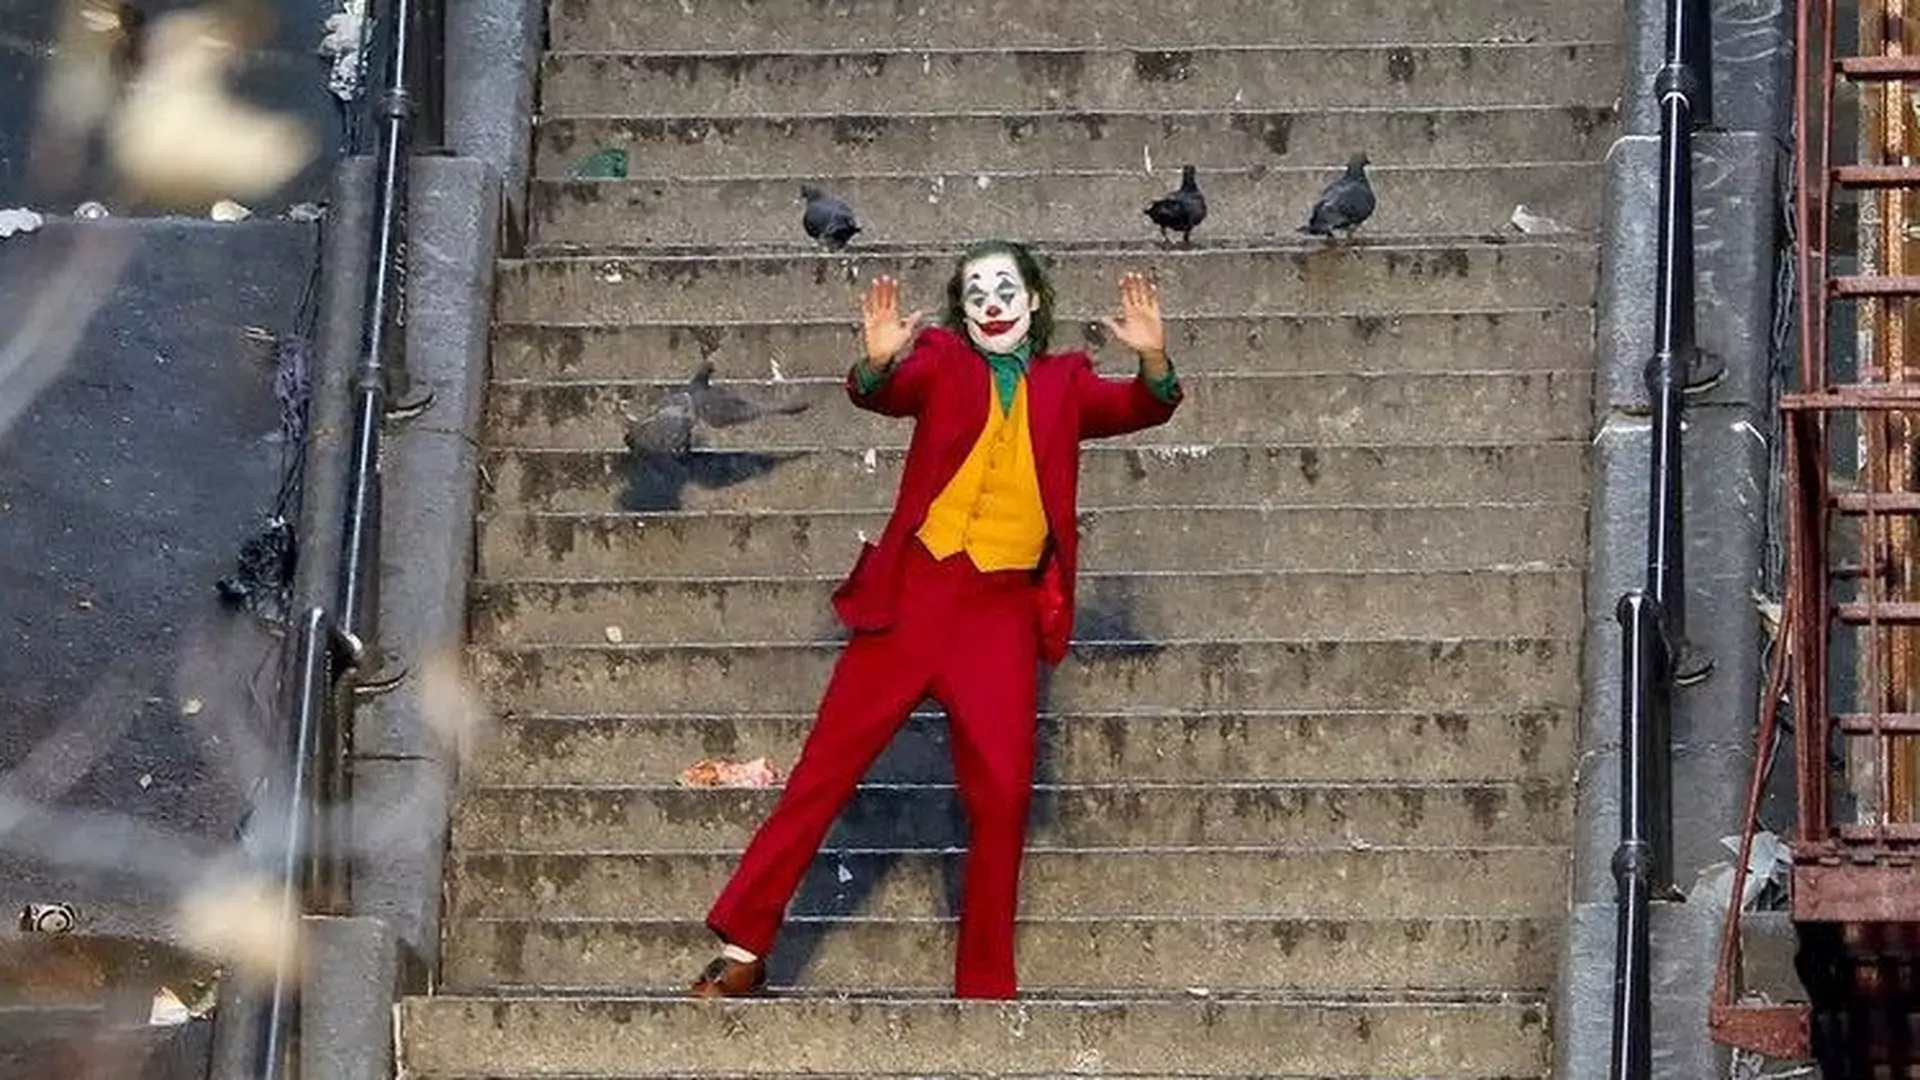 Schody z "Jokera" wkurzają mieszkańców. Burger King uspokaja darmowymi burgerami